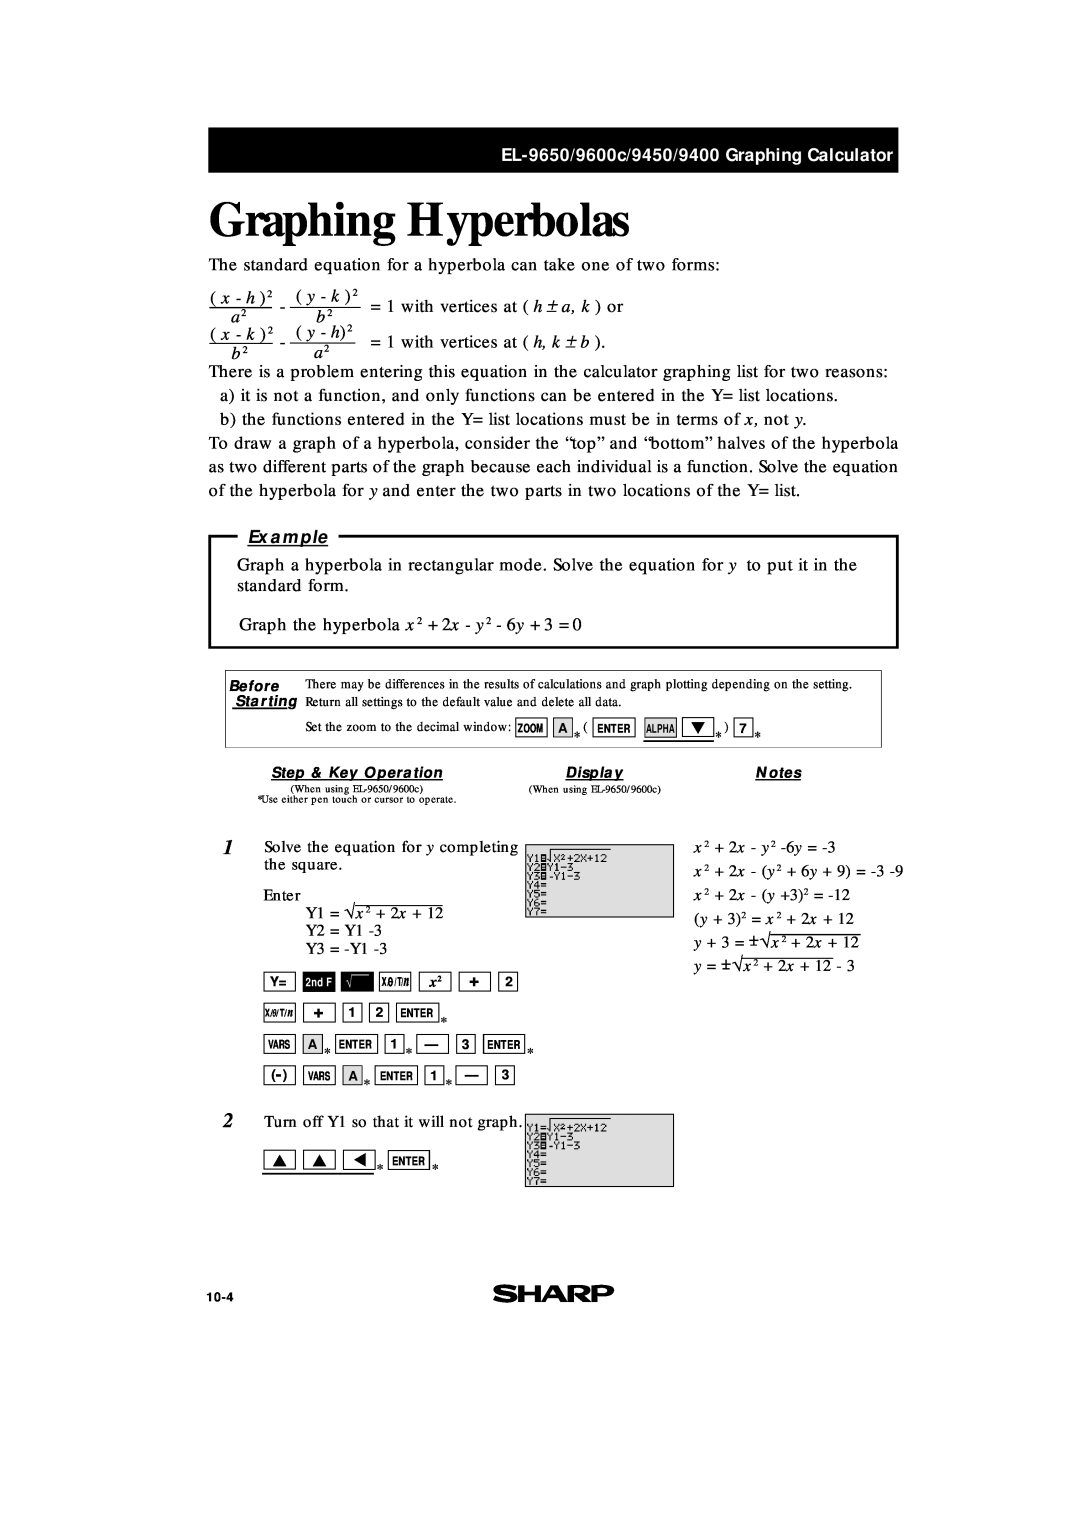 Sharp EL-9400 manual Graphing Hyperbolas, EL-9650/9600c/9450/9400 Graphing Calculator, x - h, y - k, x - k, y - h, Example 